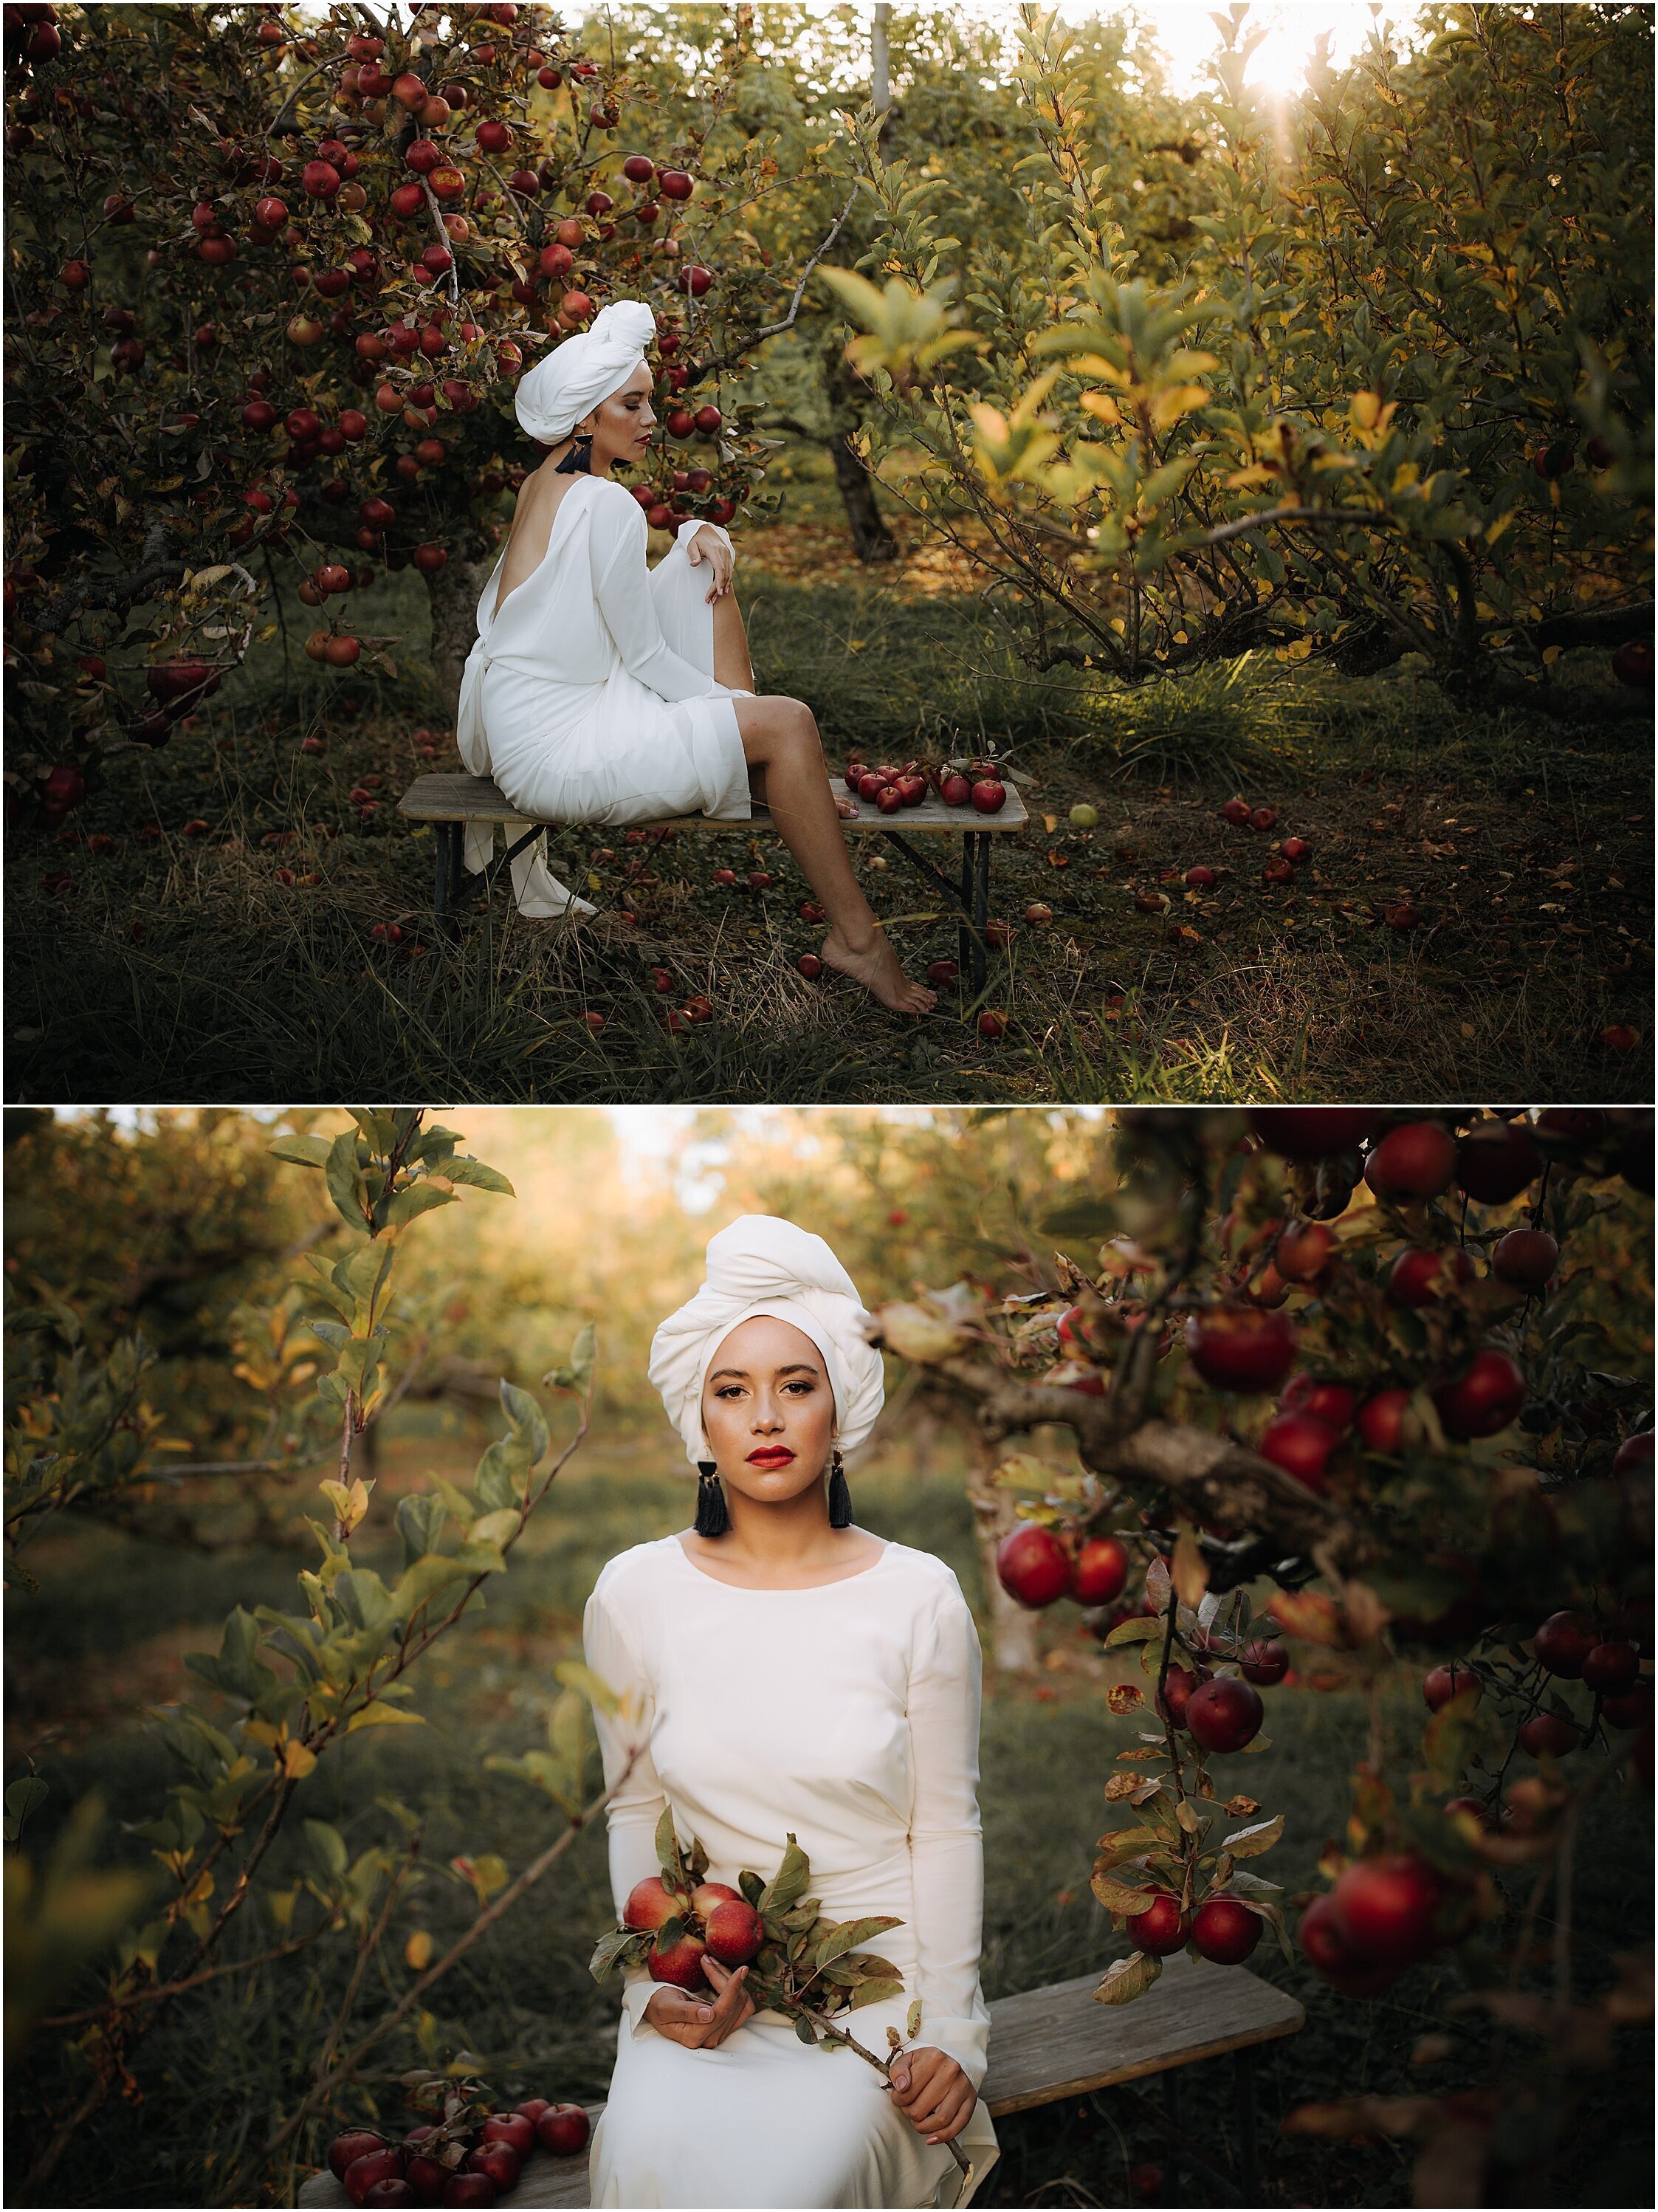 Zanda+Auckland+wedding+photographer+unique+portrait+photoshoot+ideas+autumn+winter+Windmill+apple+orchard+Coatesville+New+Zealand_24.jpeg